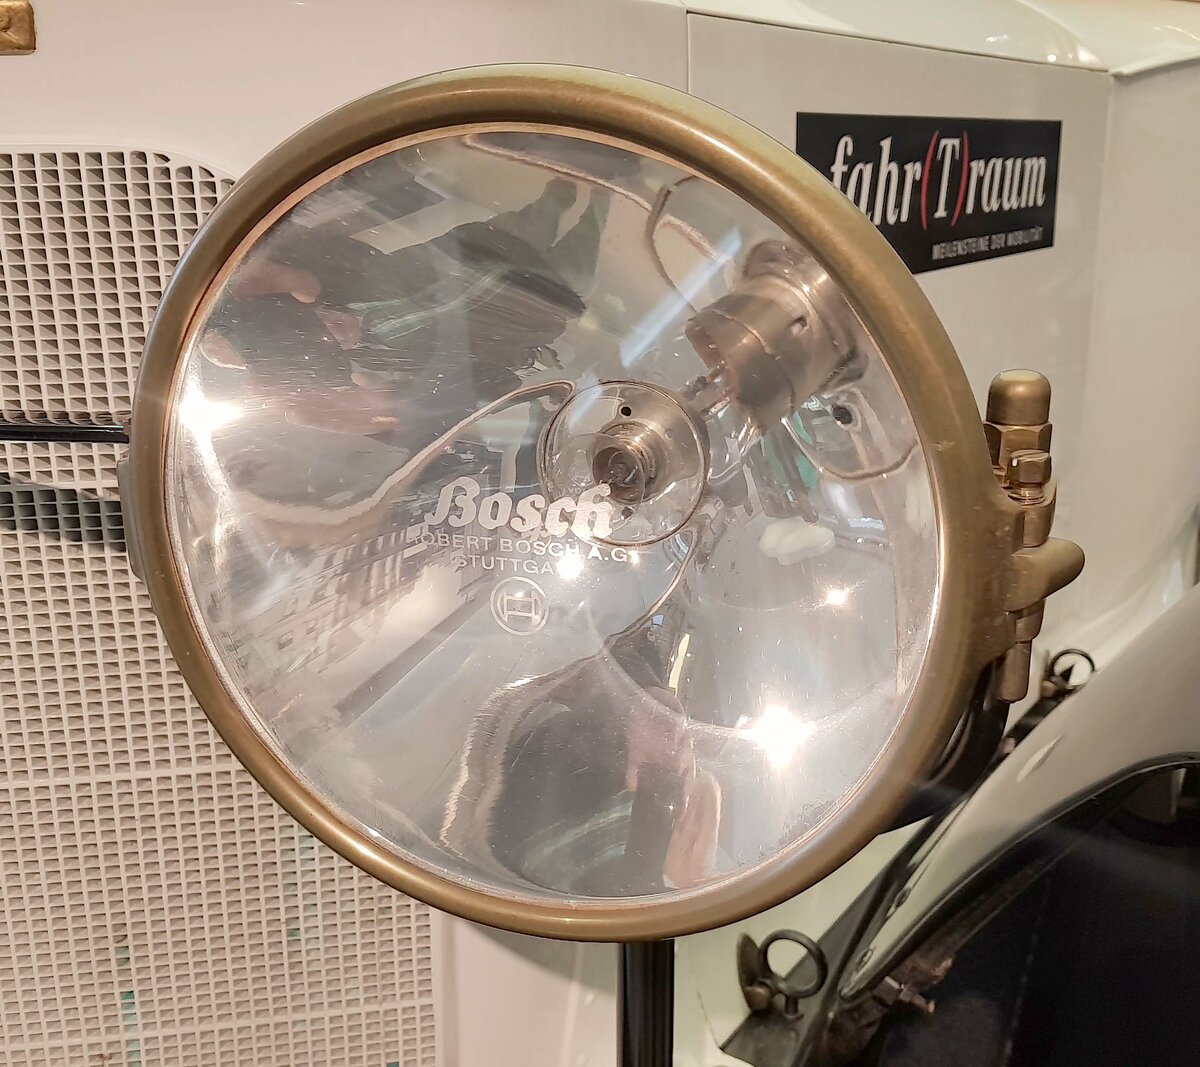 =Frontscheinwerfer des Austro-Daimler, Bj. 1918, 3563 ccm, 35 PS, gesehen im Museum  fahr(T)raum - Ferdinand Porsche  in Mattsee/Österreich, Juni 2022